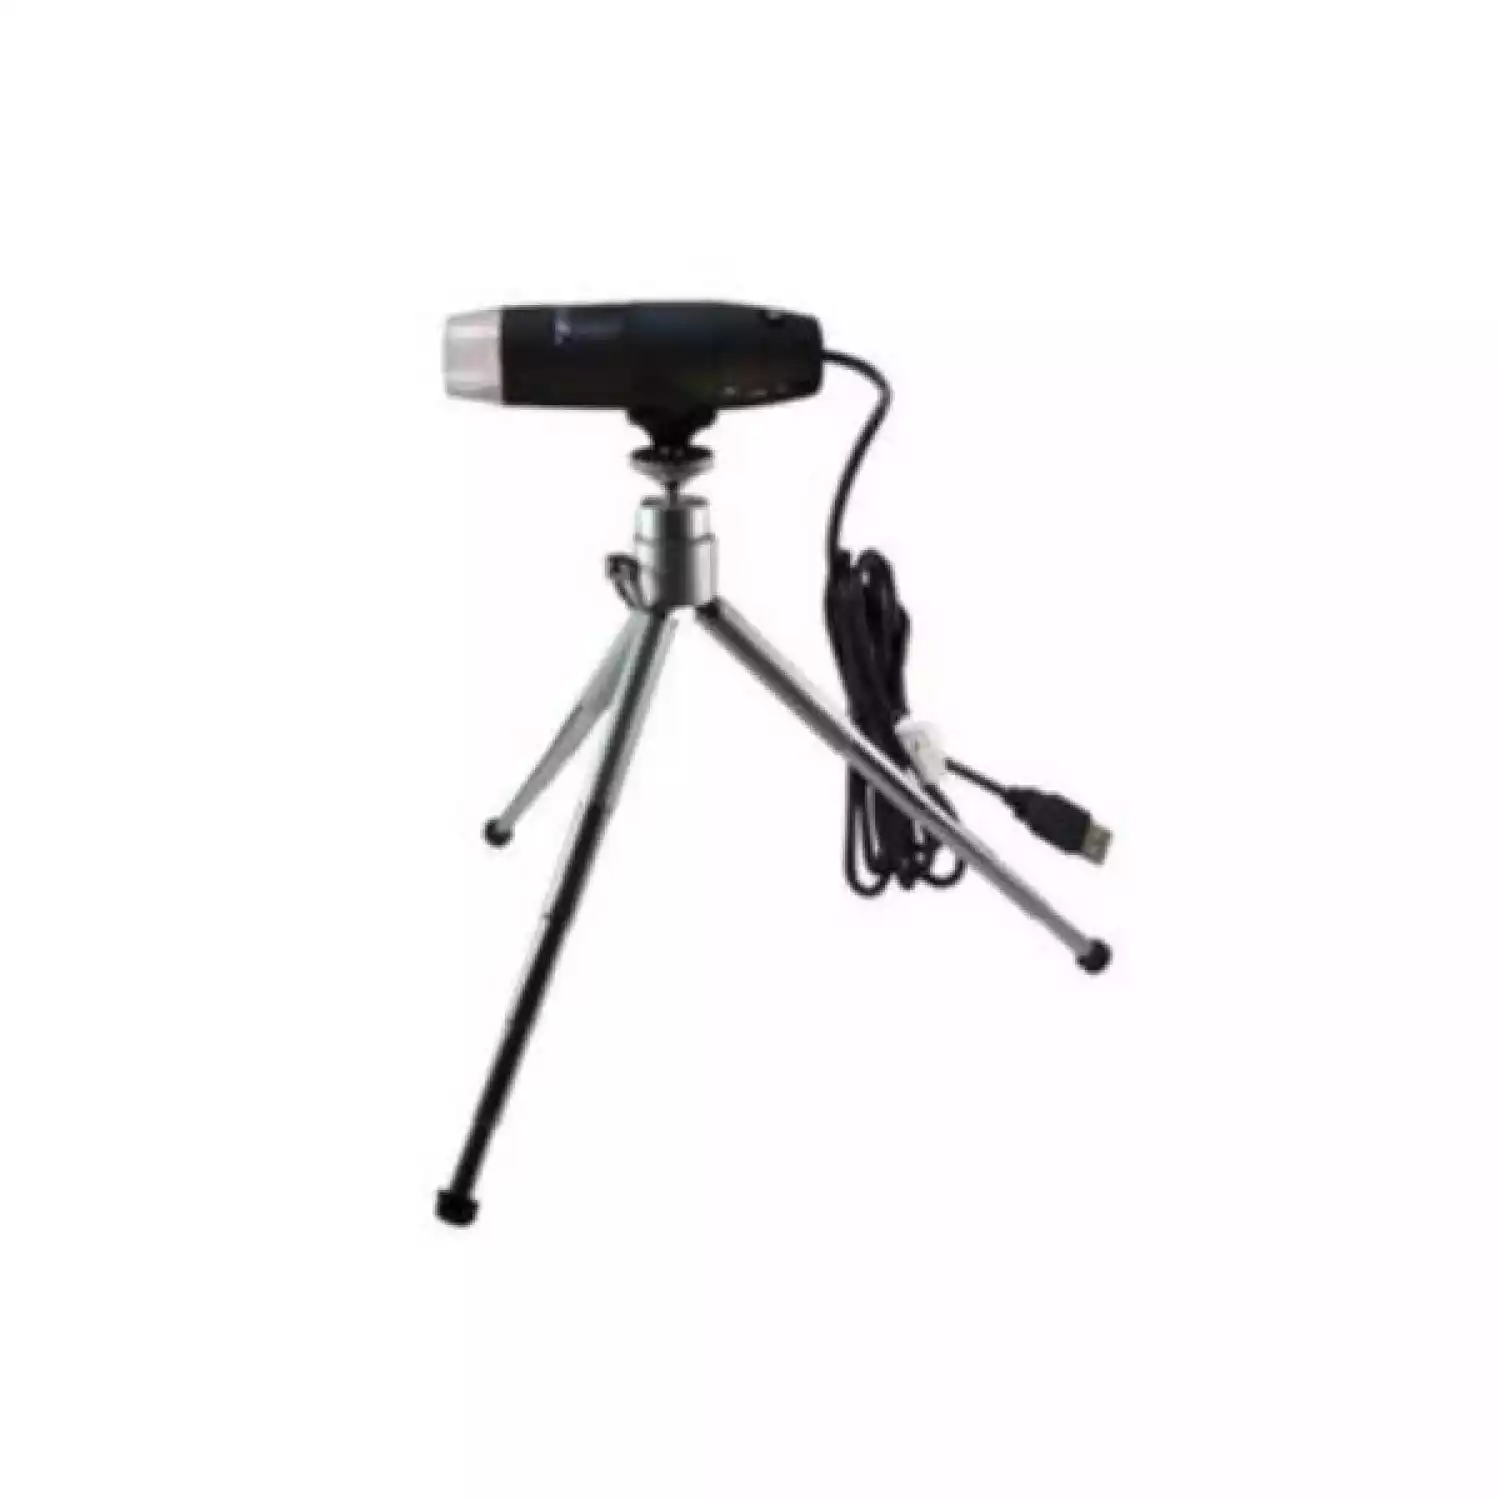 USB-микроскоп PCE MM 200 UV c ультрафиолетовой подсветкой - 4